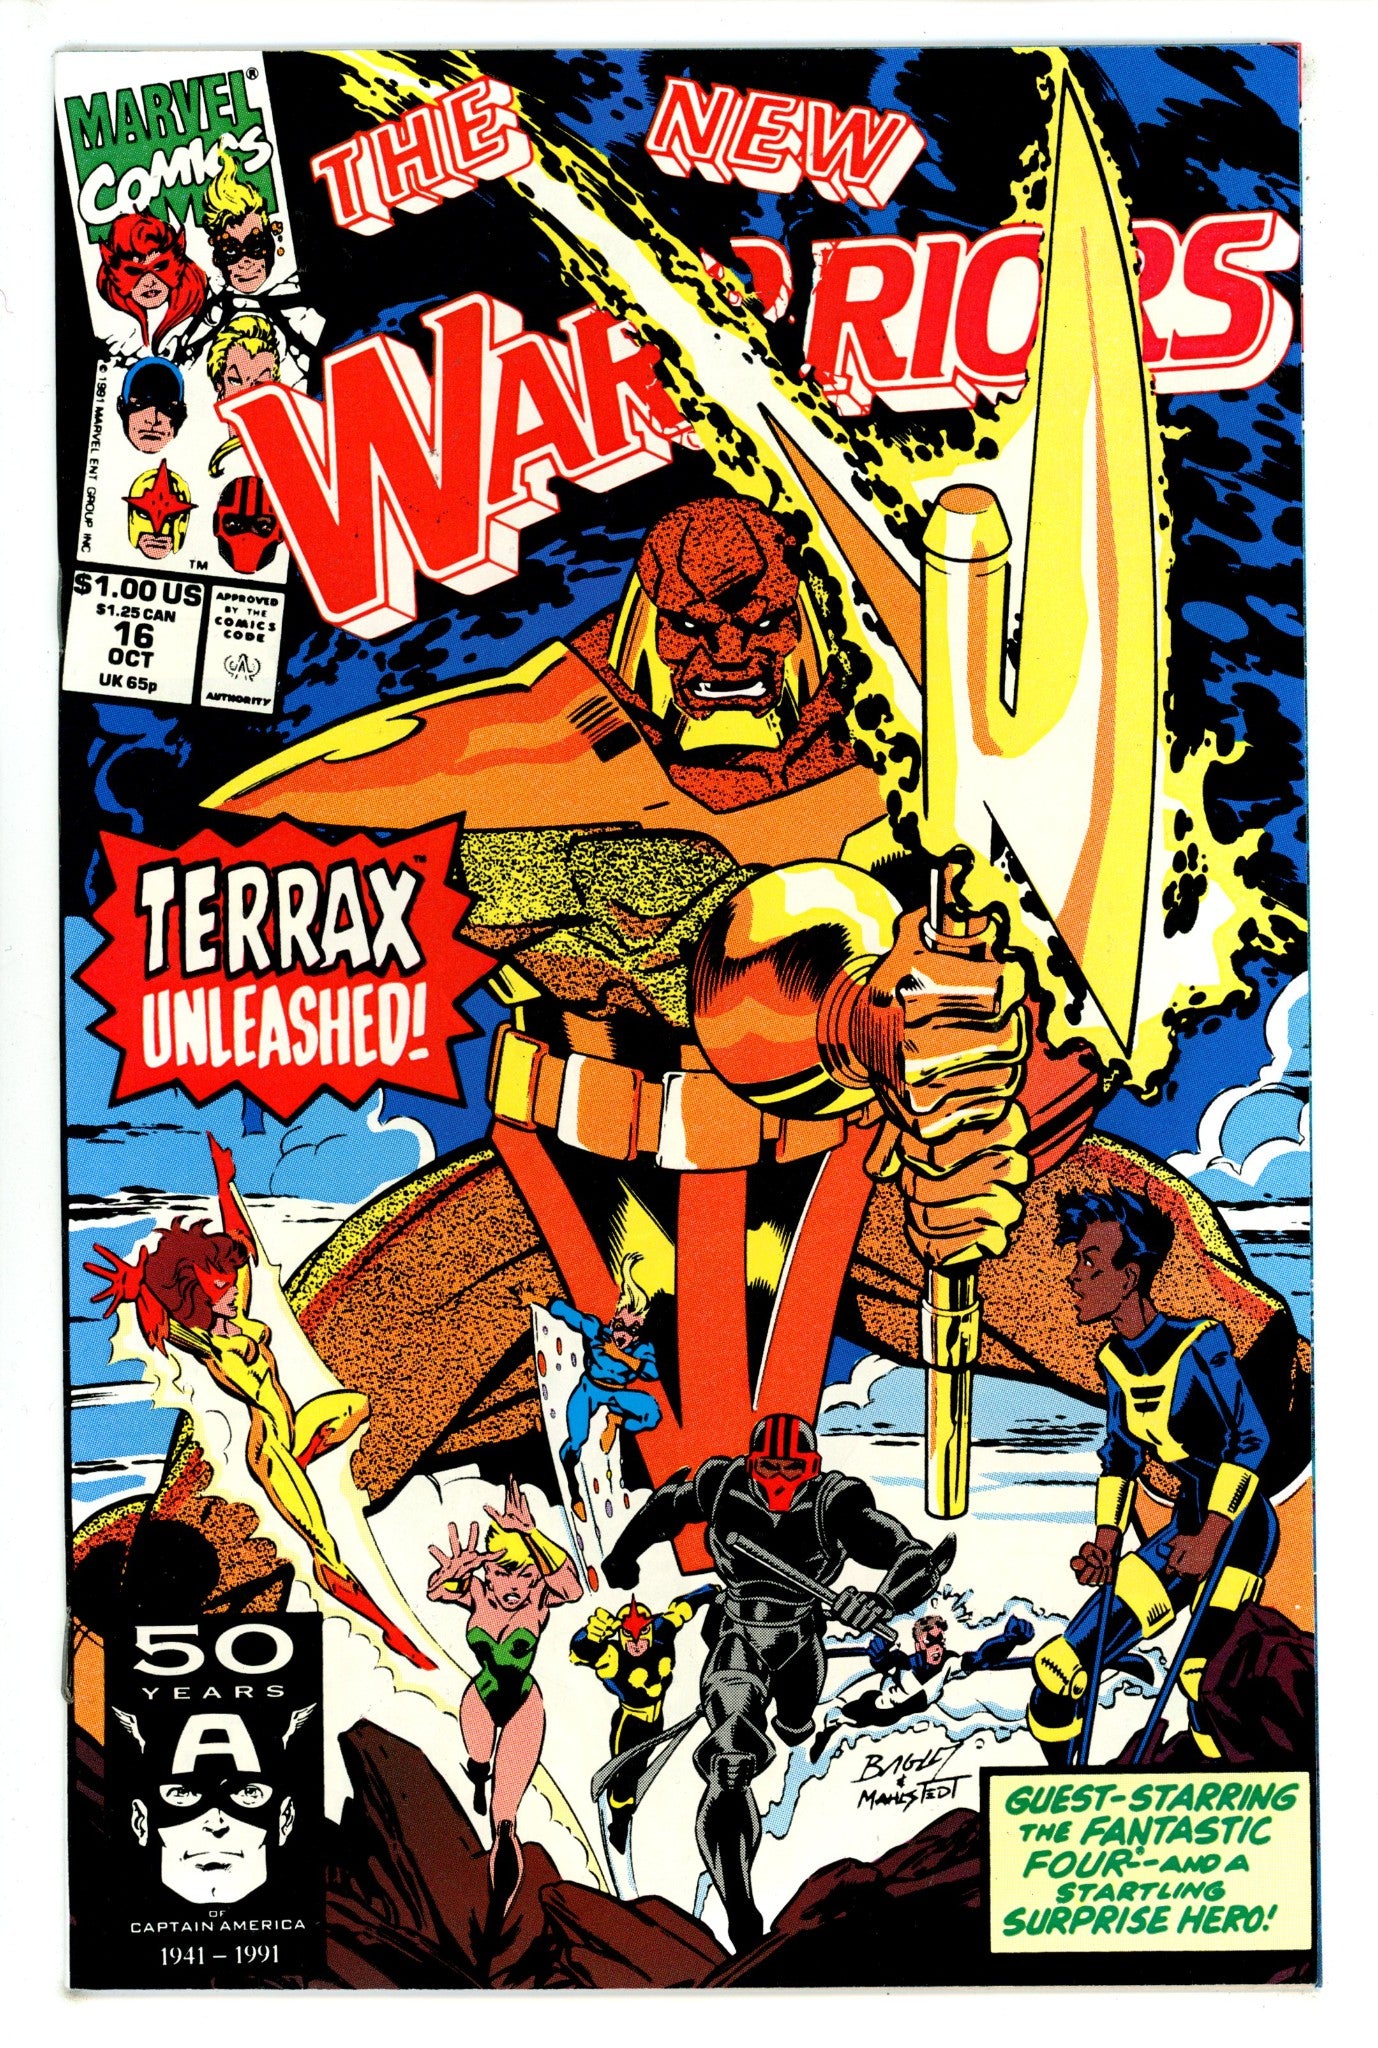 The New Warriors Vol 1 16 (1991)